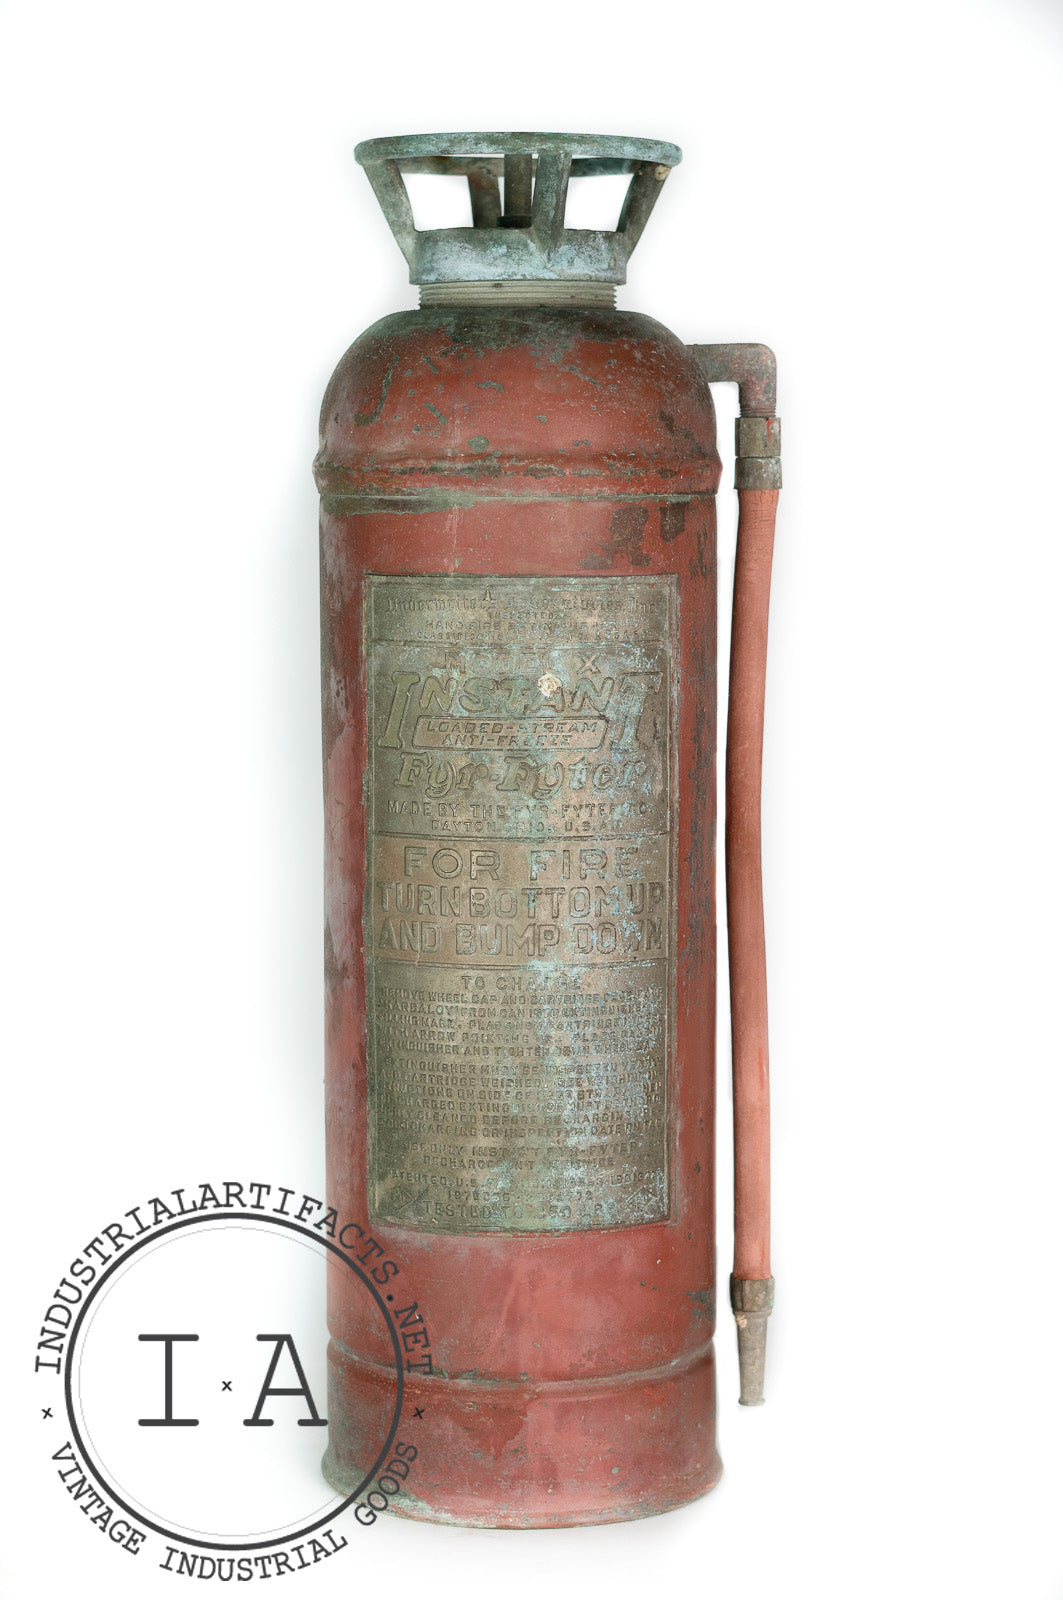 Model X "Fyr-Fyter" Fire Extinguisher